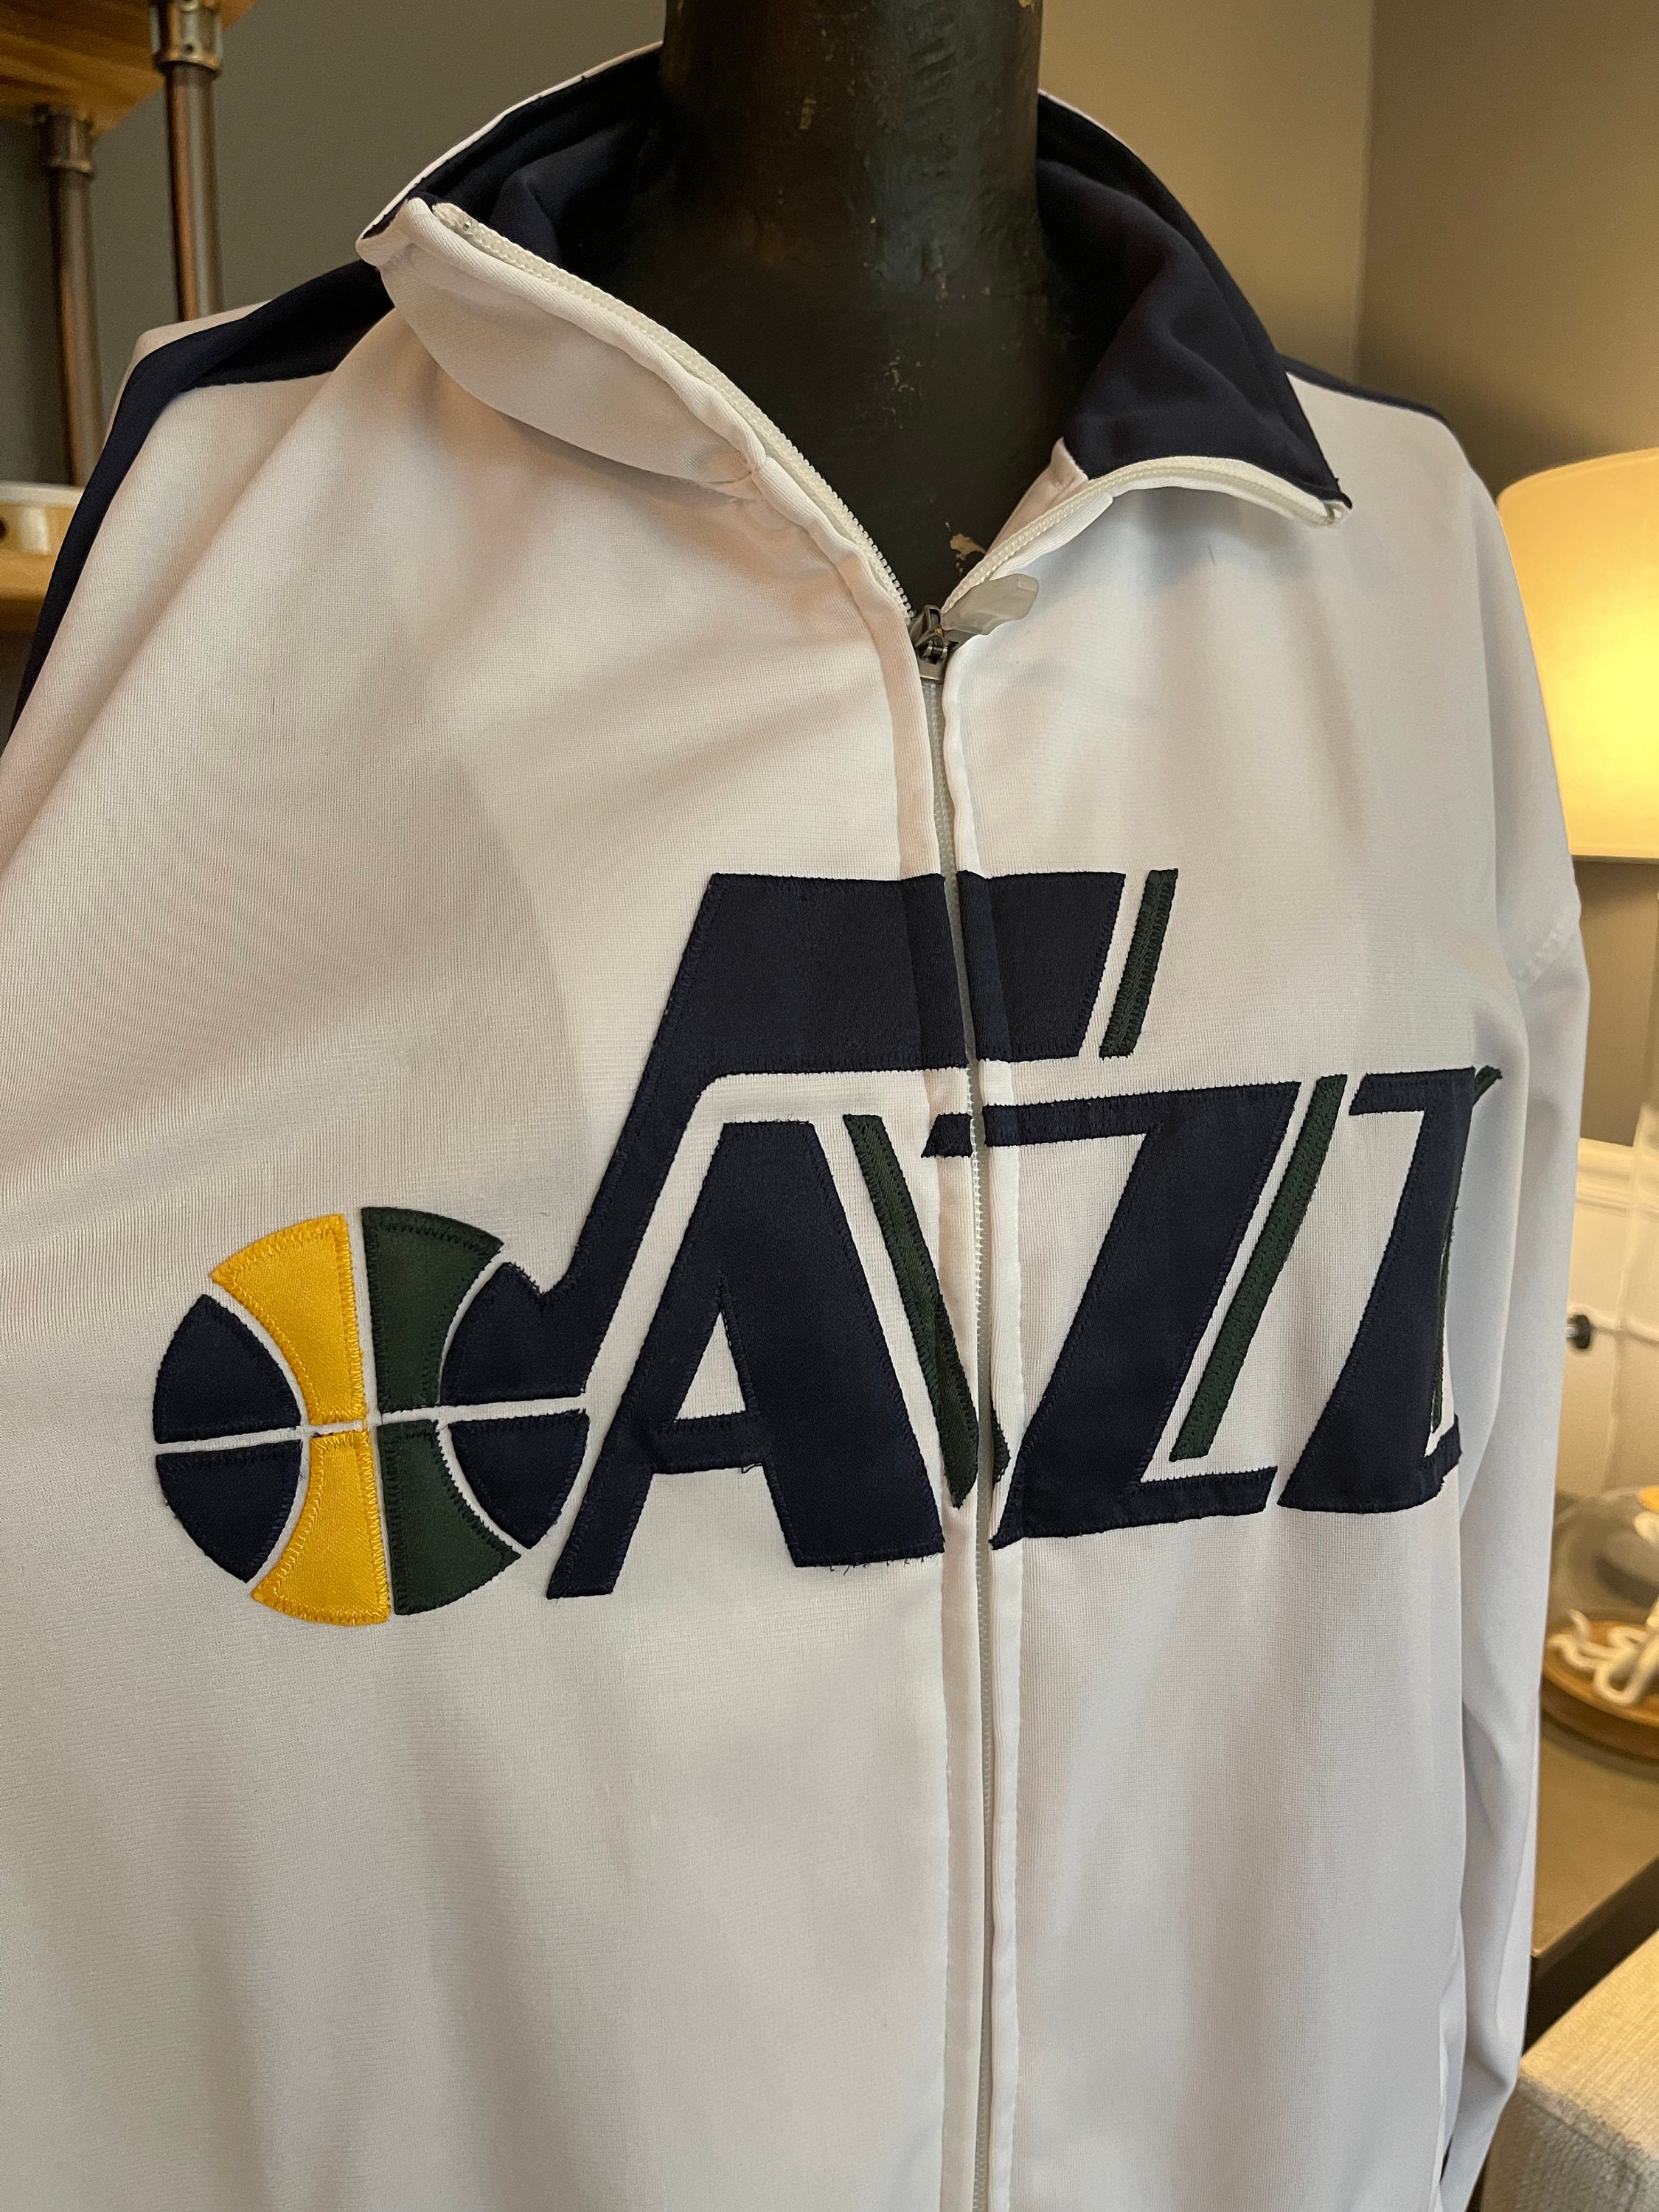 Utah Jazz NBA Majestic Training Jacket White Long -  Hong Kong